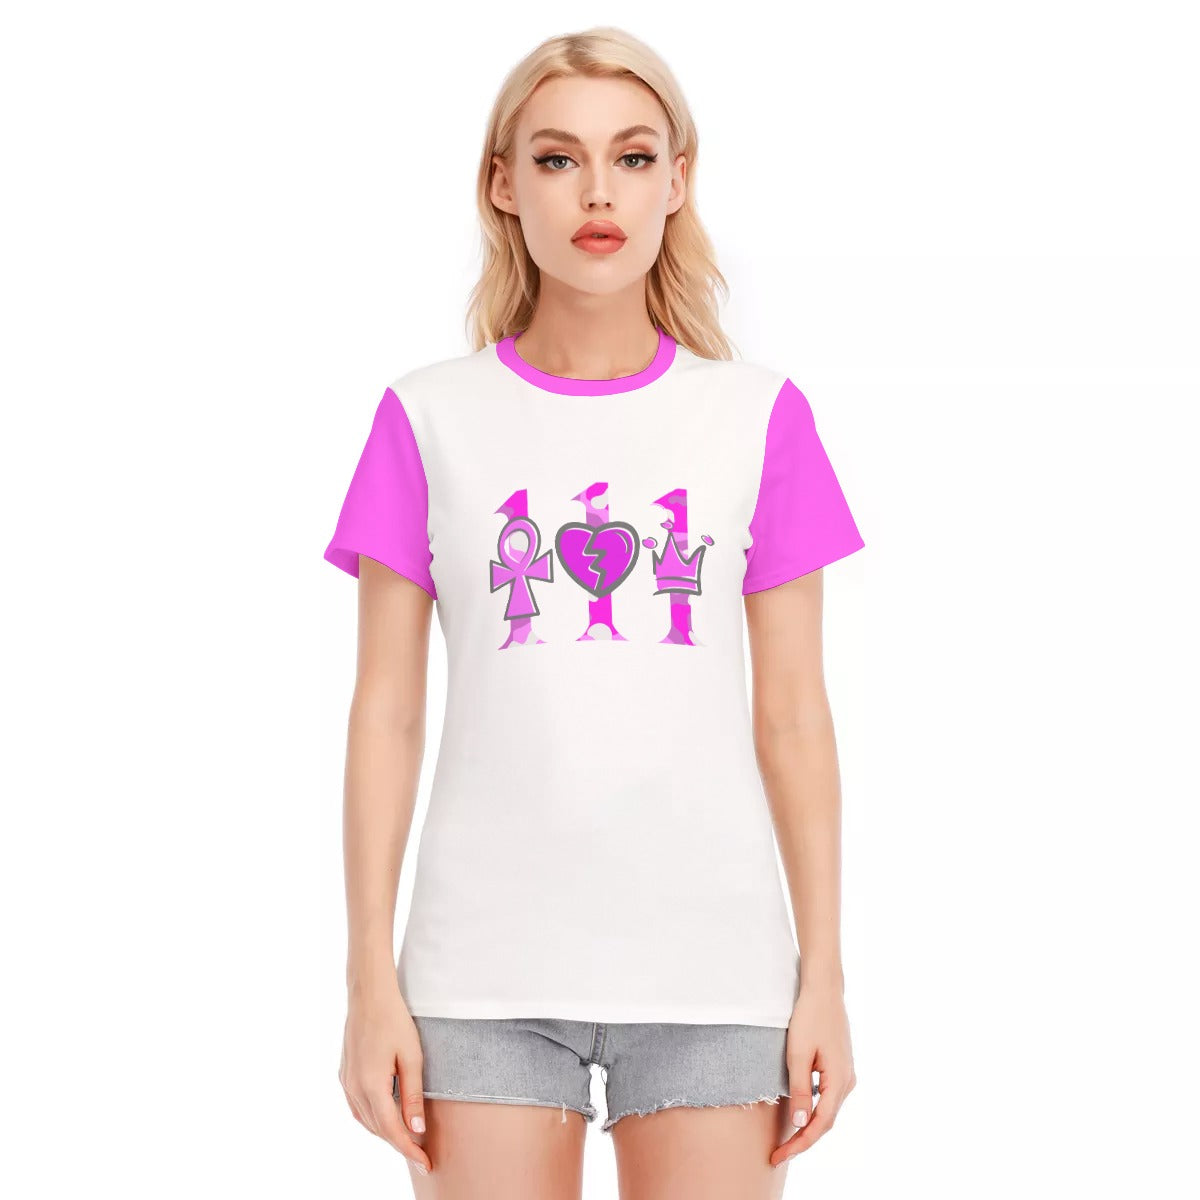 111 PINK CAMO Women's T-Shirt